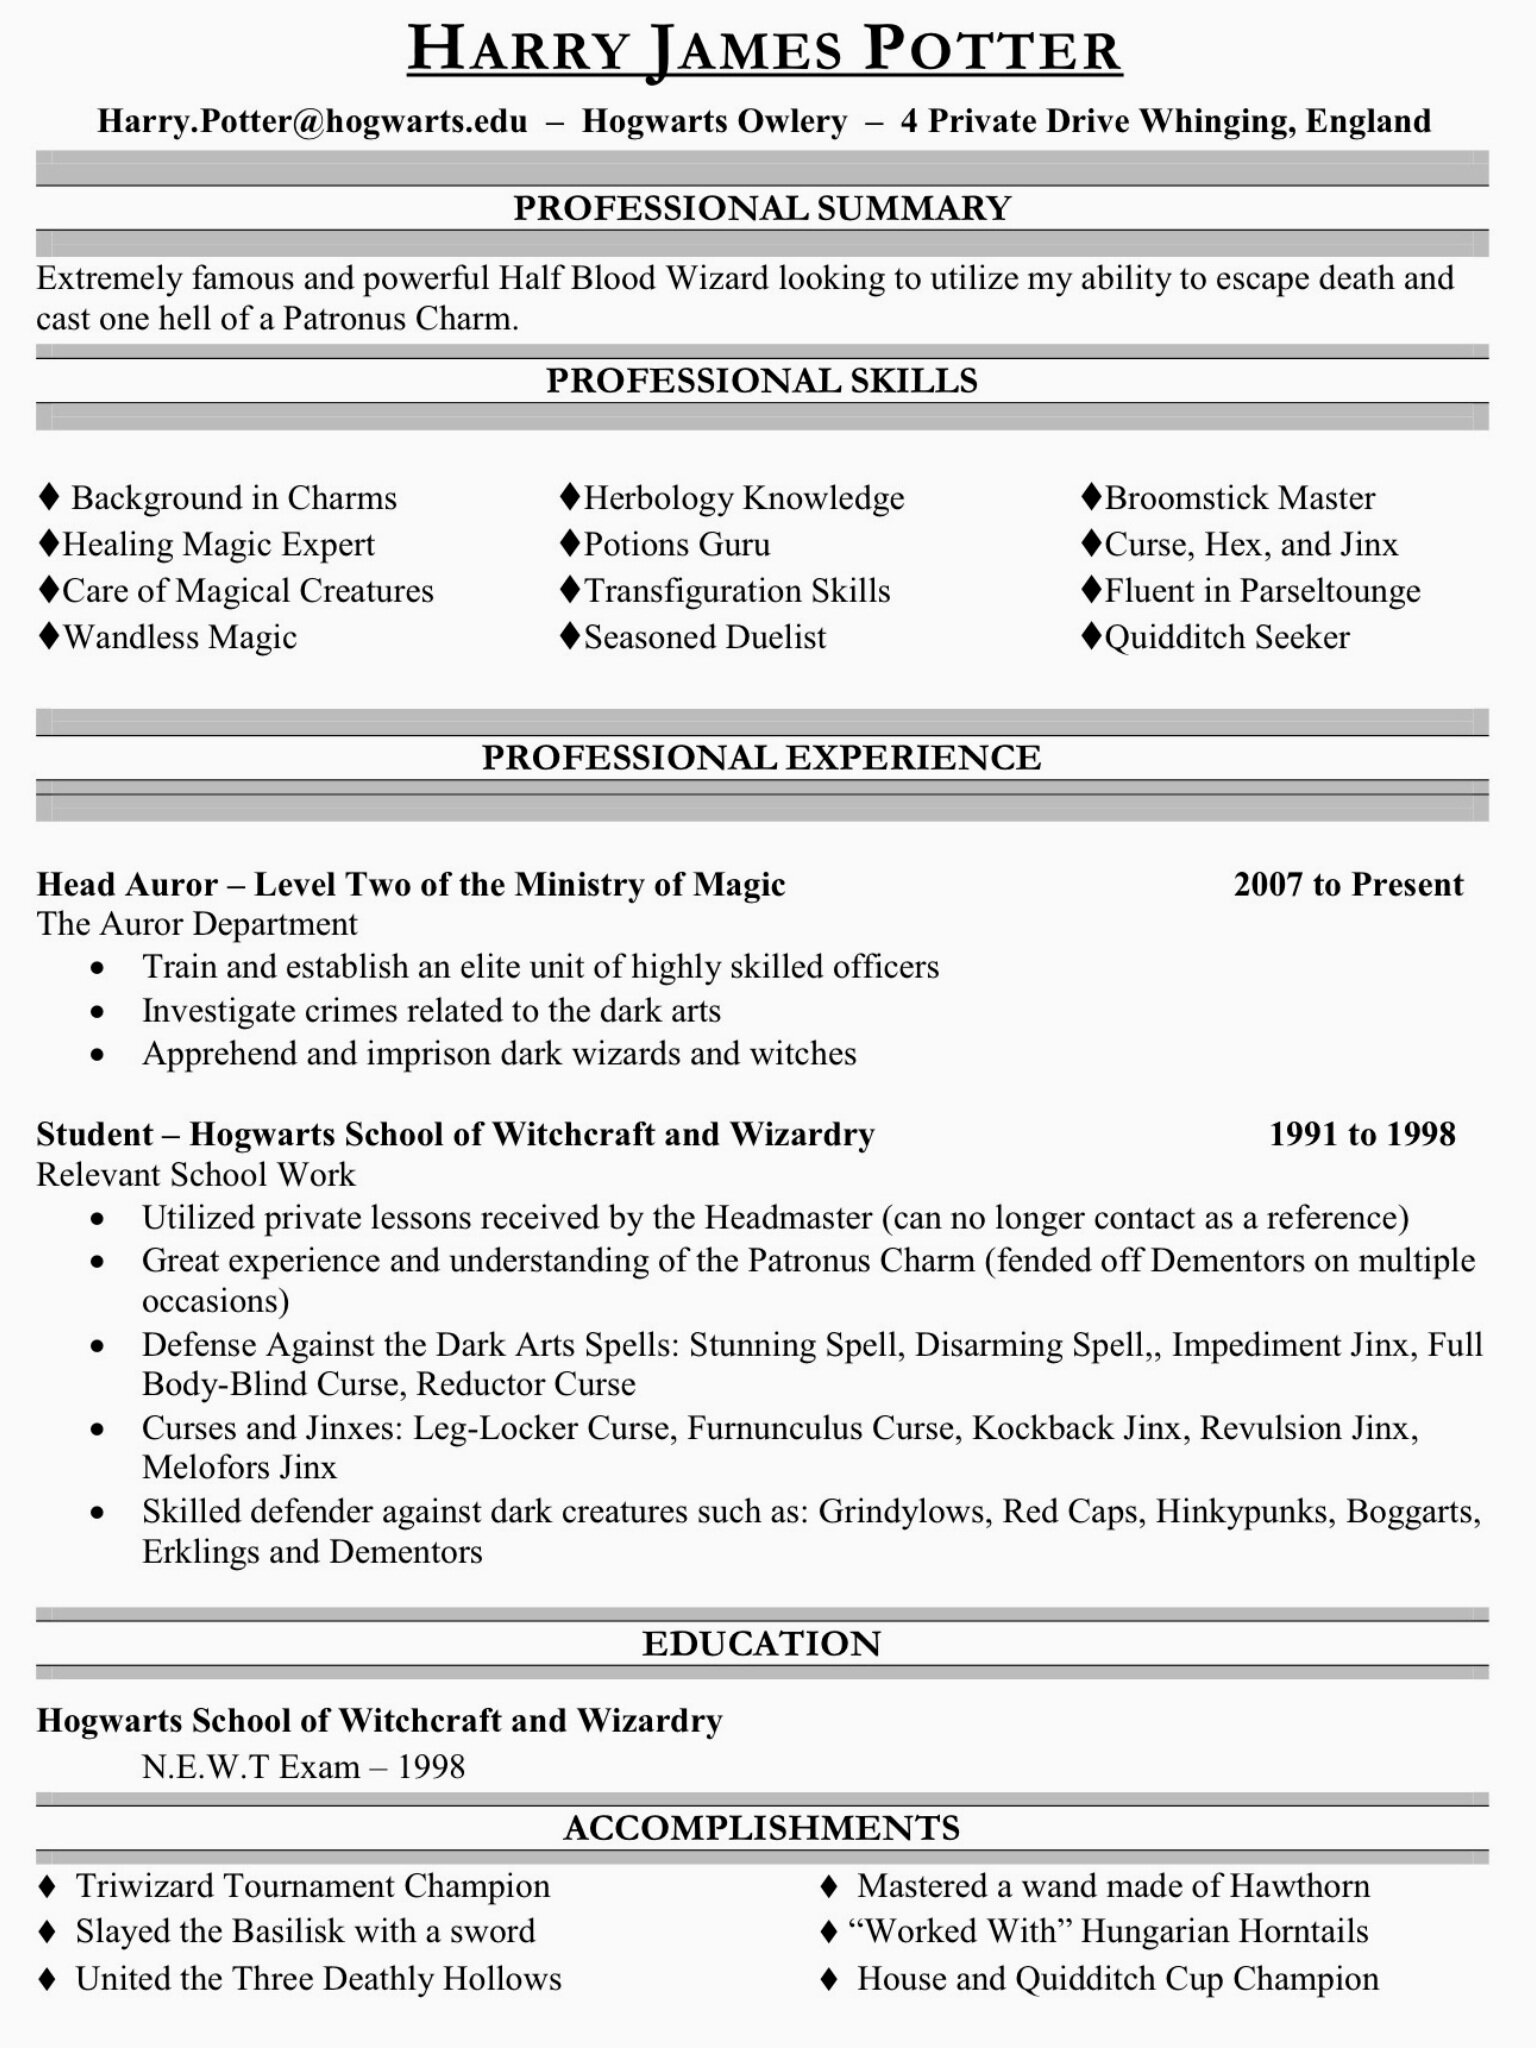 Reverse Chronological Resume Format - 